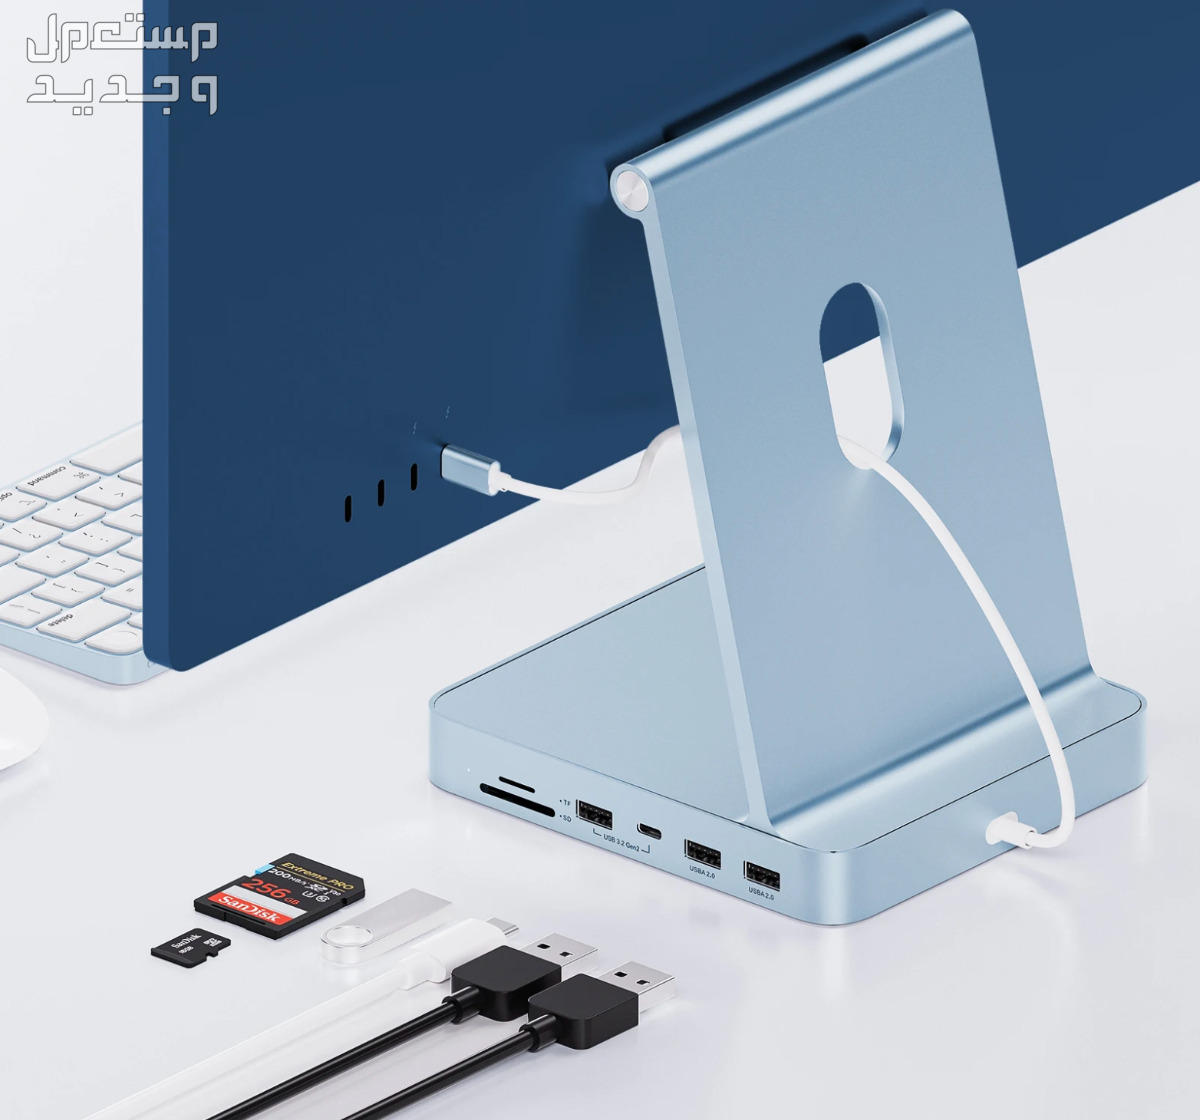 ايماك imac جديد 5 كي رباعي USB مع البصمه ماركة أبل في الخبر بسعر 4690 ريال سعودي